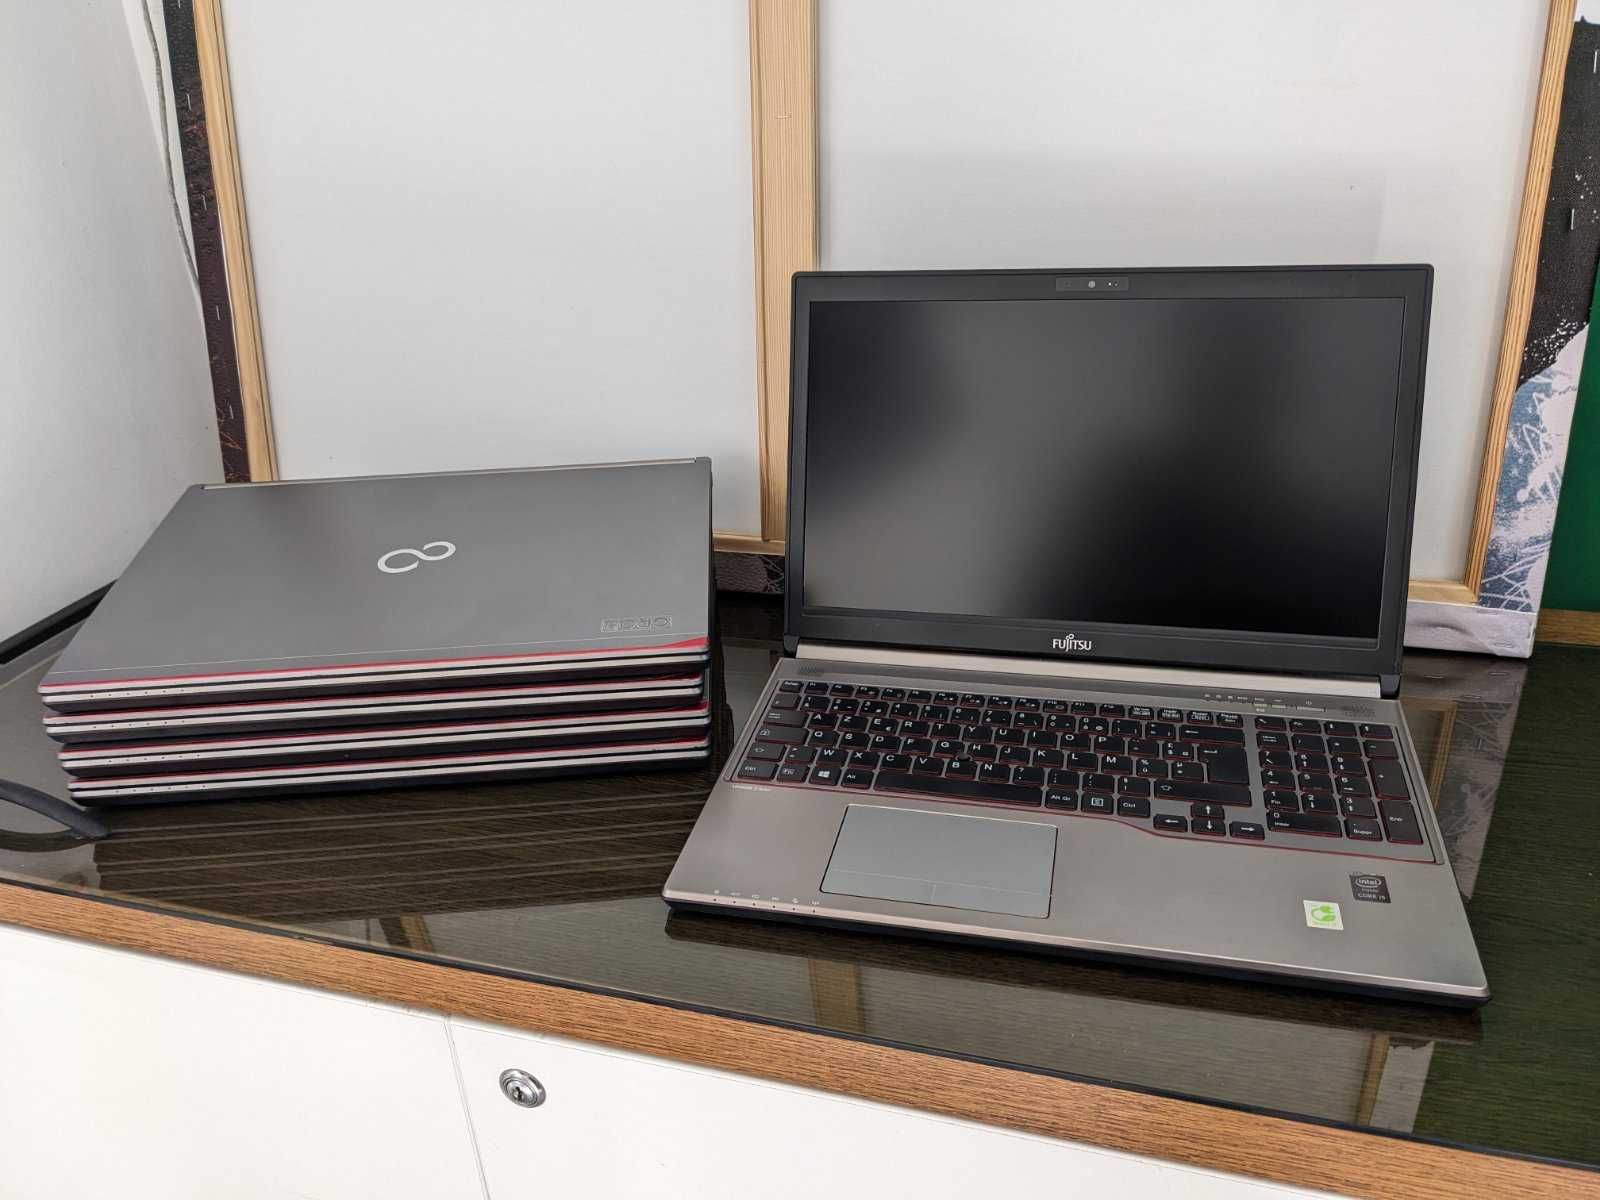 Гарні ноутбуки Fujitsu LIFEBOOK E754 - в наяності 6 ноутбуків